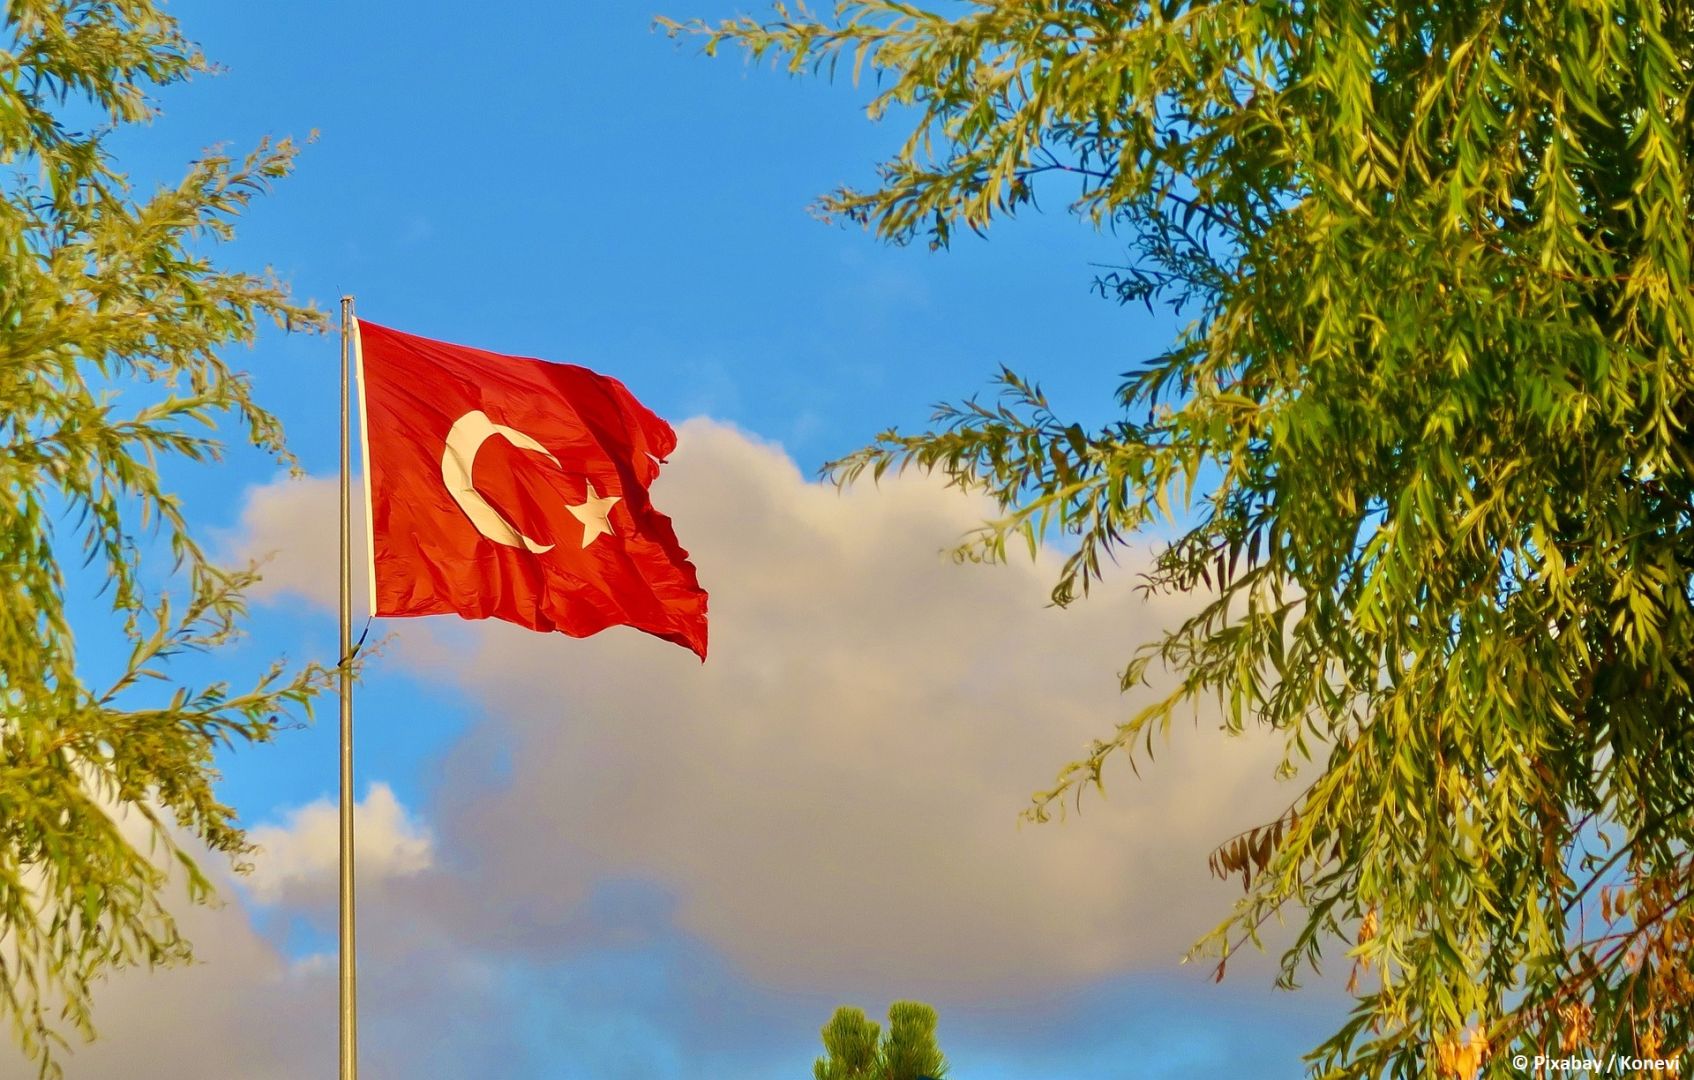 Türkei will EURO 2032 auszurichten
​